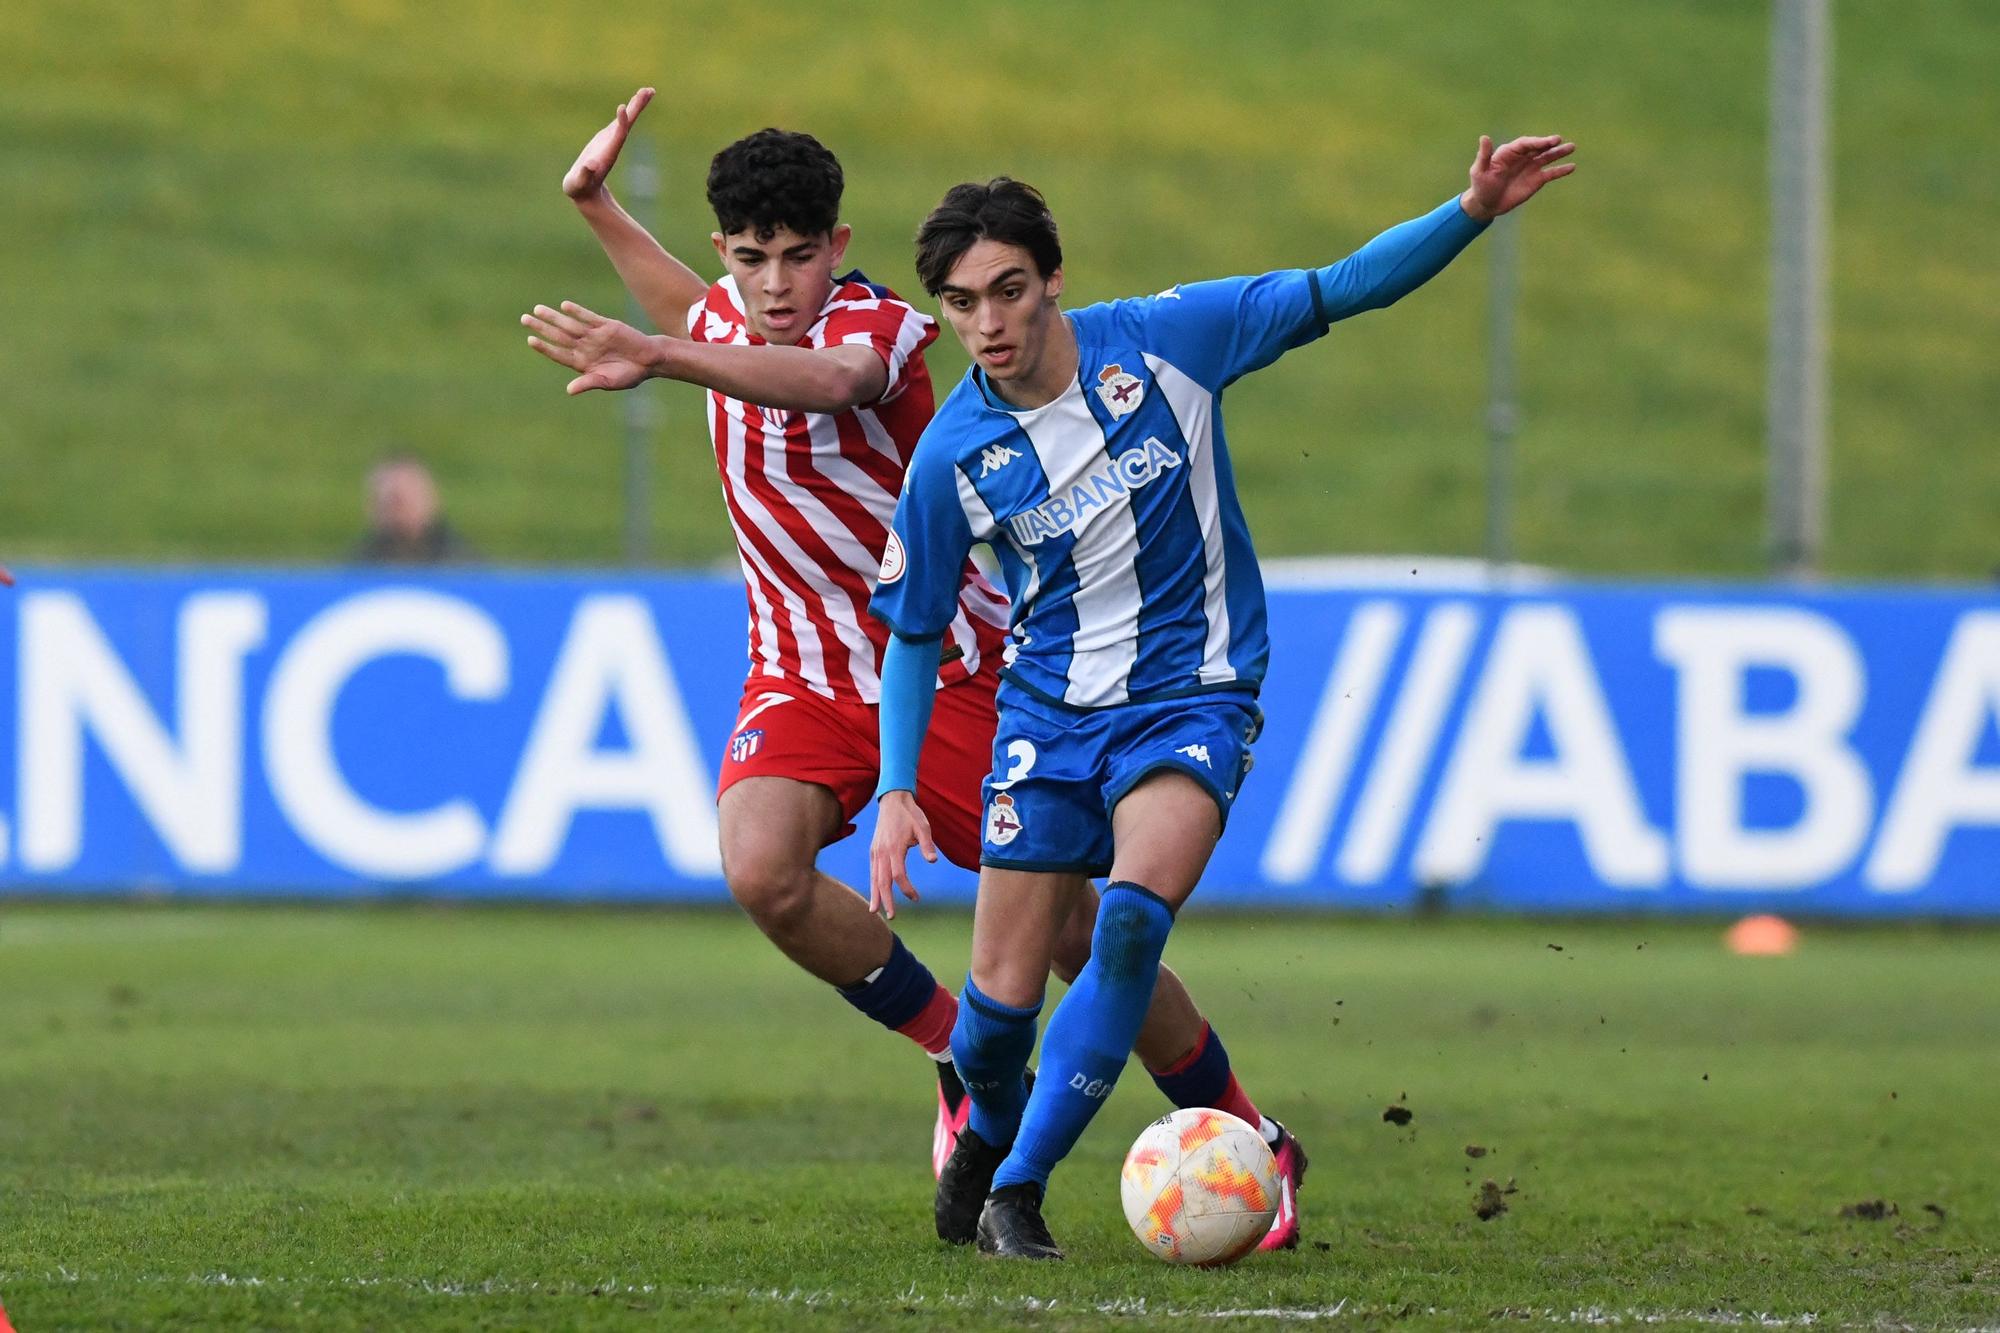 El Dépor juvenil asombra en la Copa del Rey remontando dos goles al Atlético